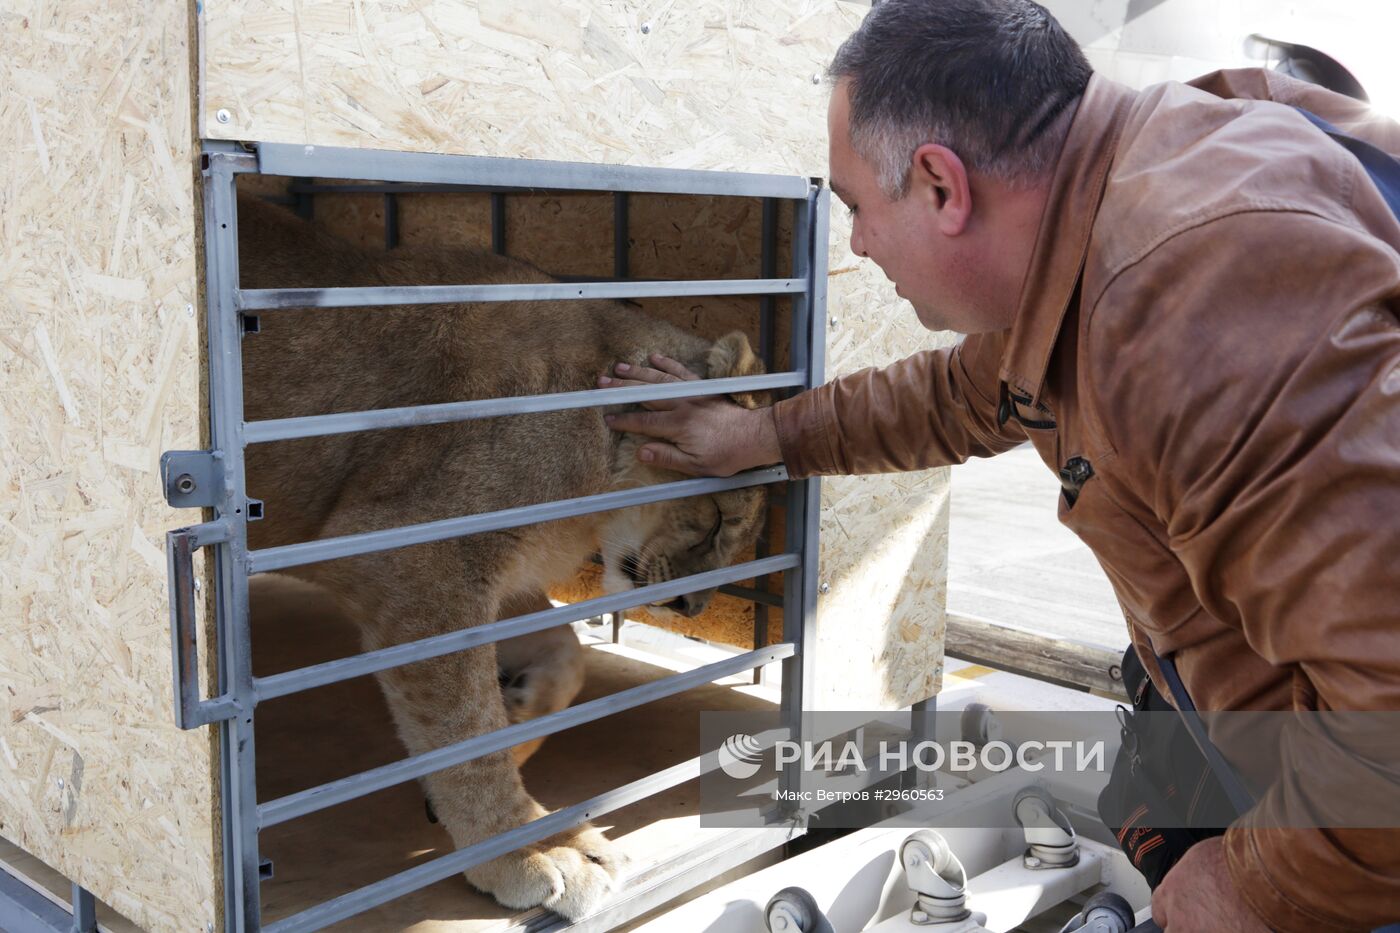 Спасенную на Южном Урале львицу Лолу привезли в Крым